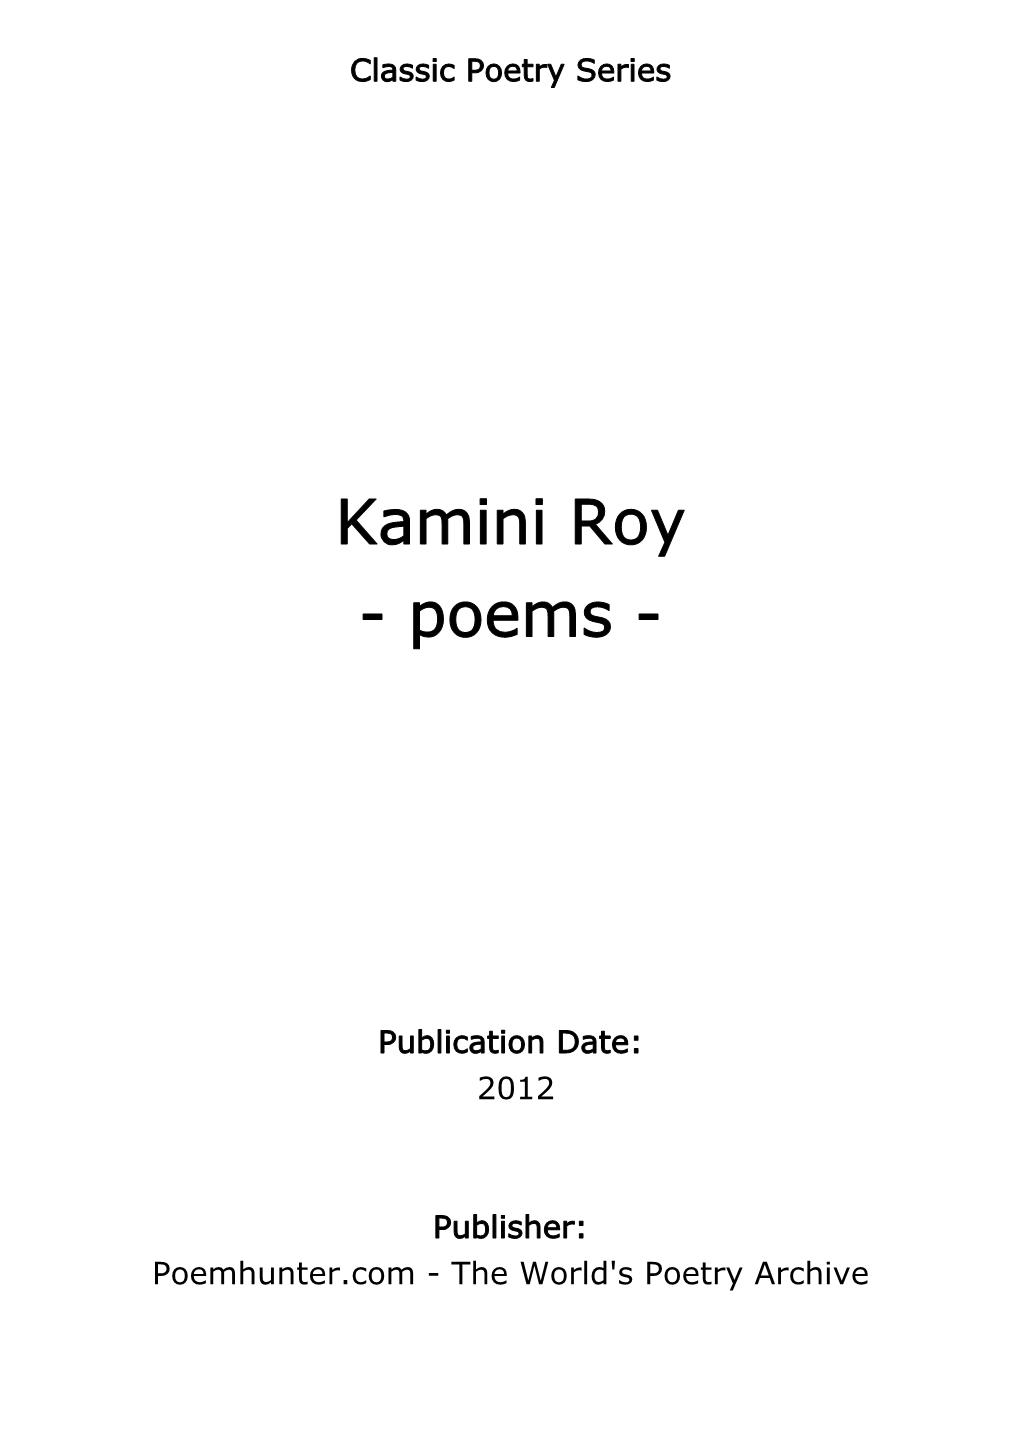 Kamini Roy - Poems